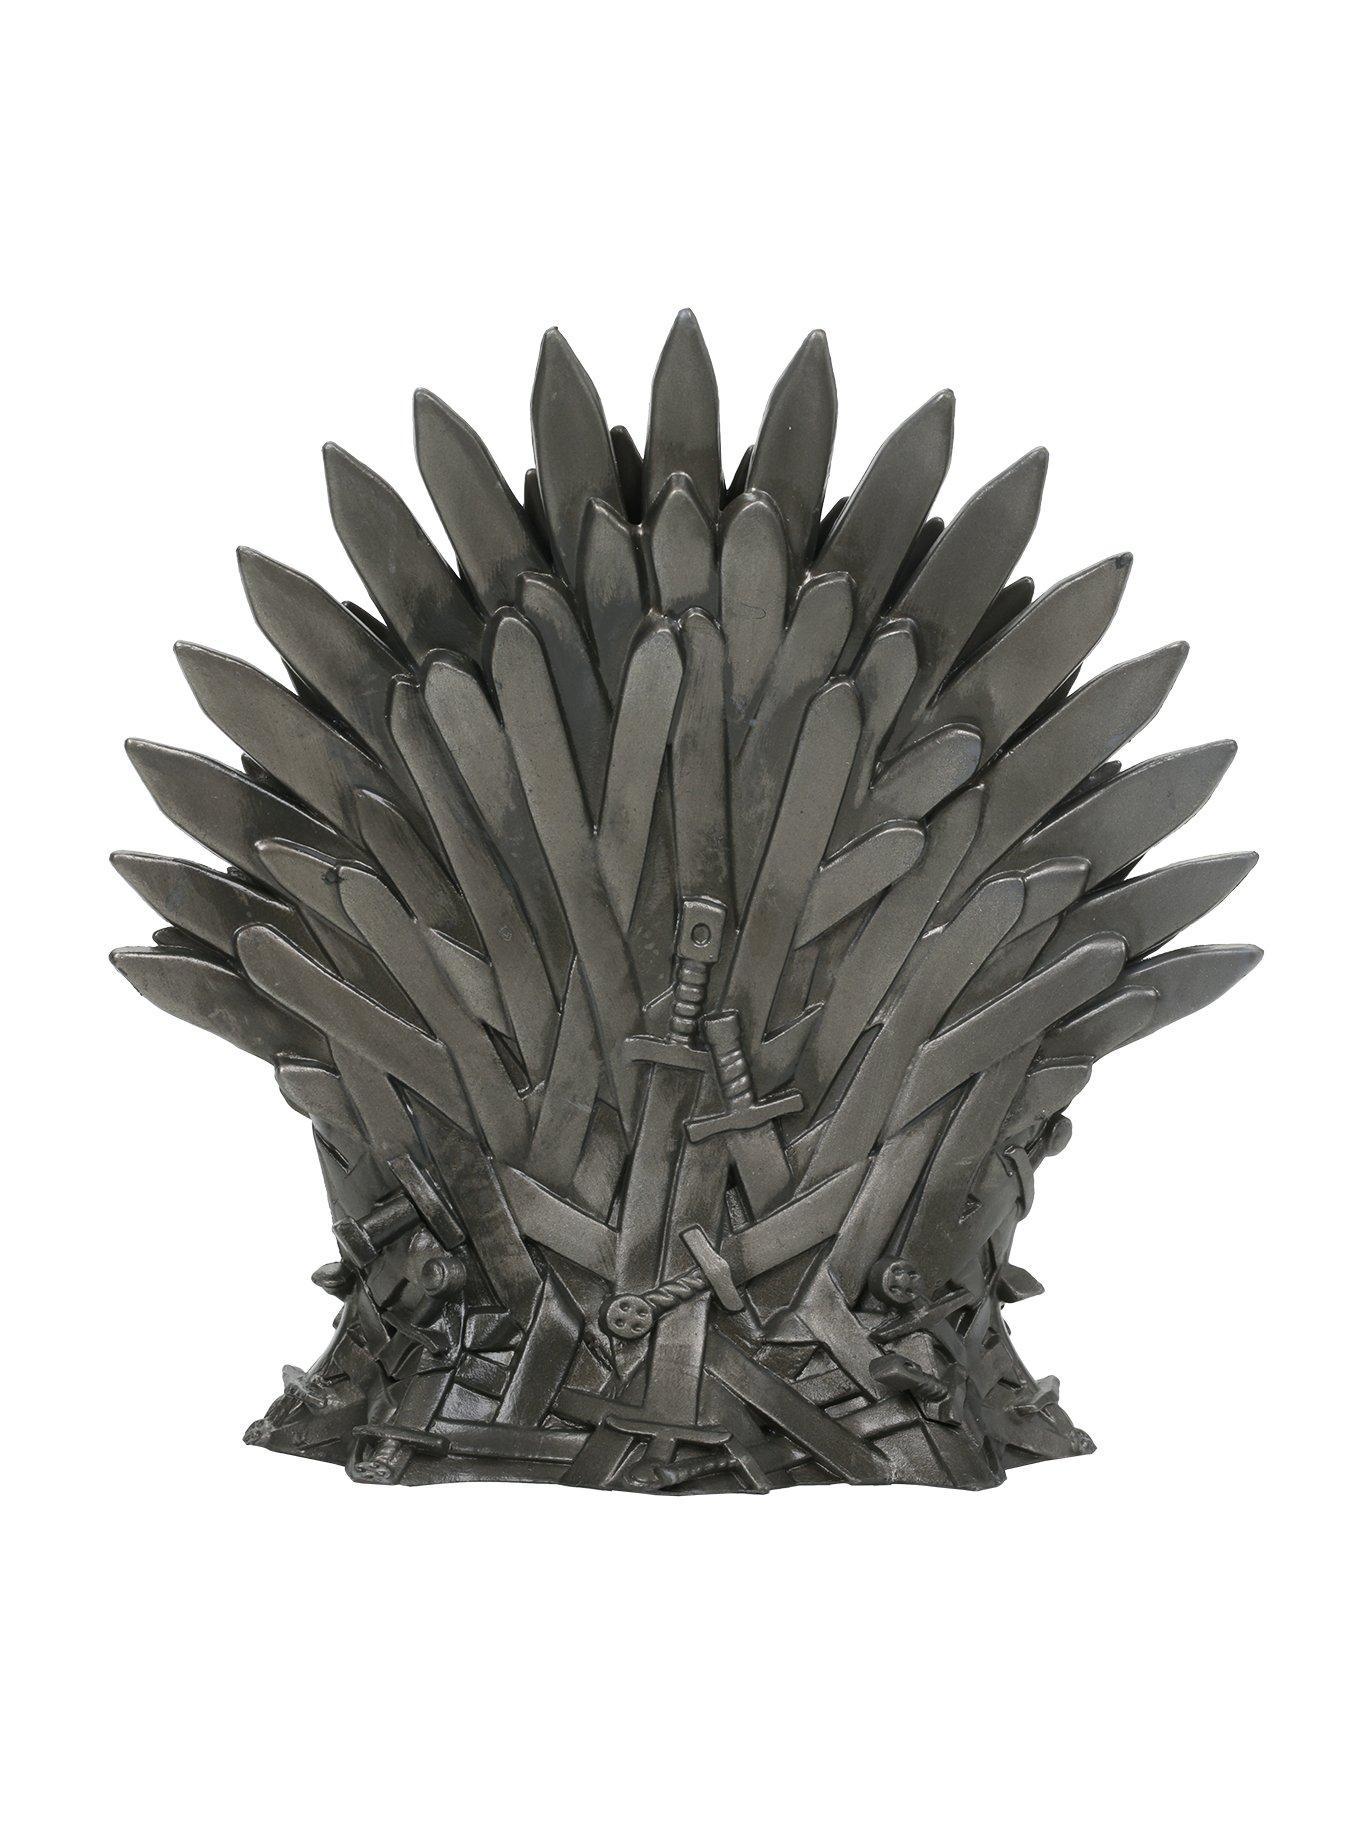 Funko Game Of Thrones Pop! Iron Throne Vinyl Figure 2015 New York Comic Con Exclusive, , alternate